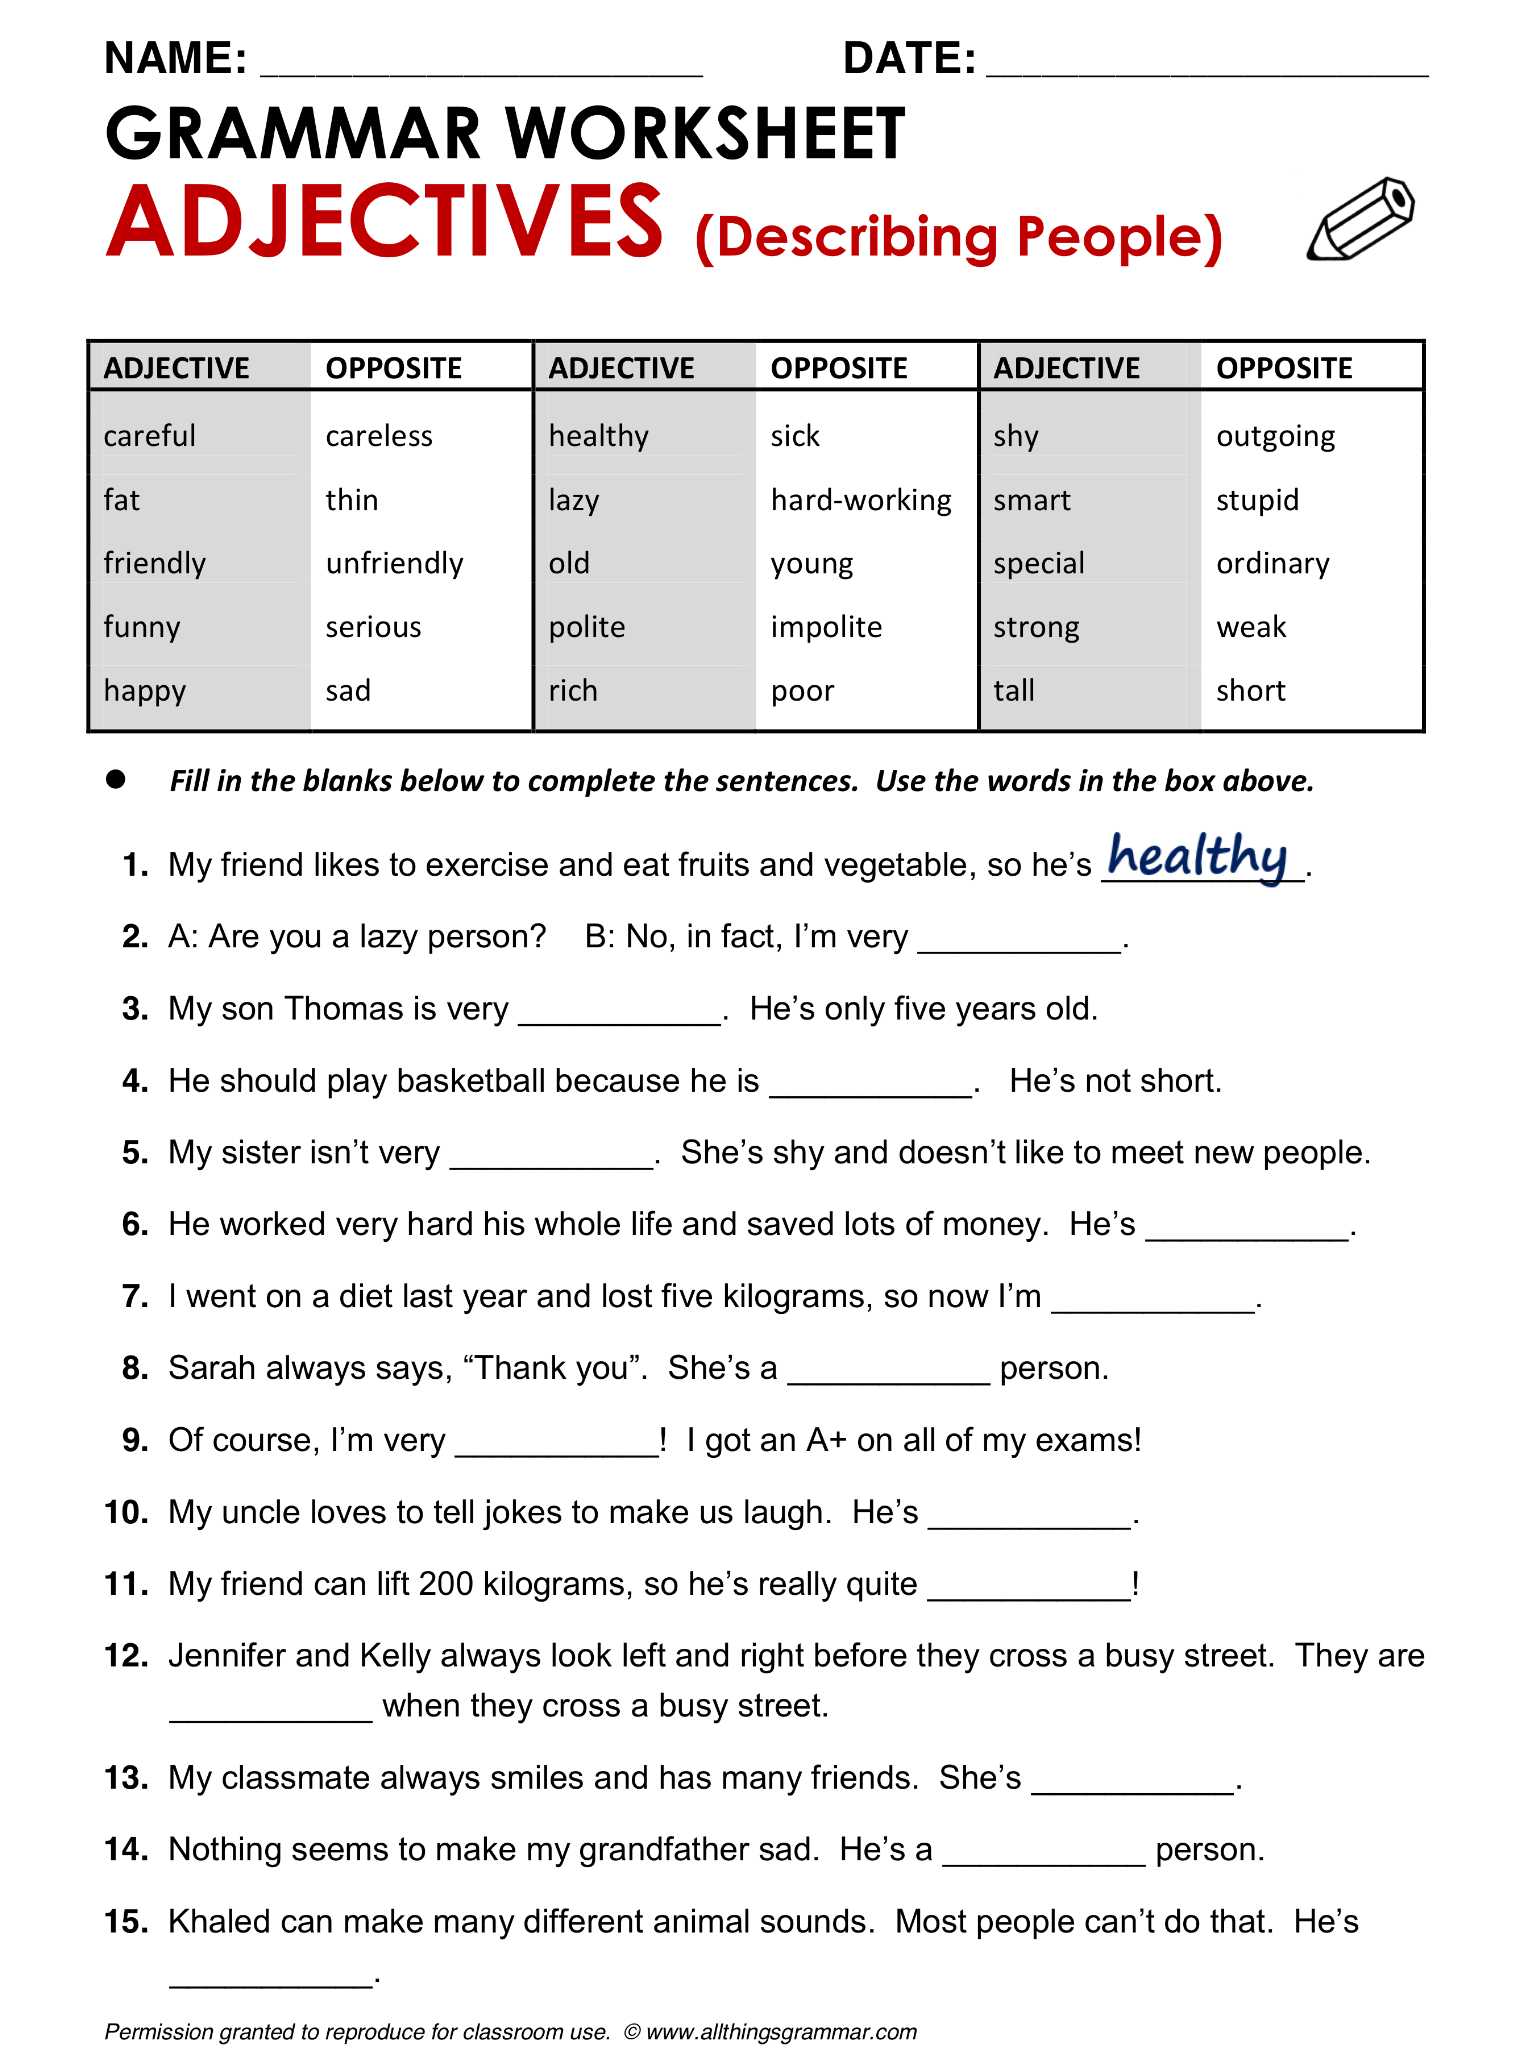 english-language-grammar-worksheets-language-worksheets